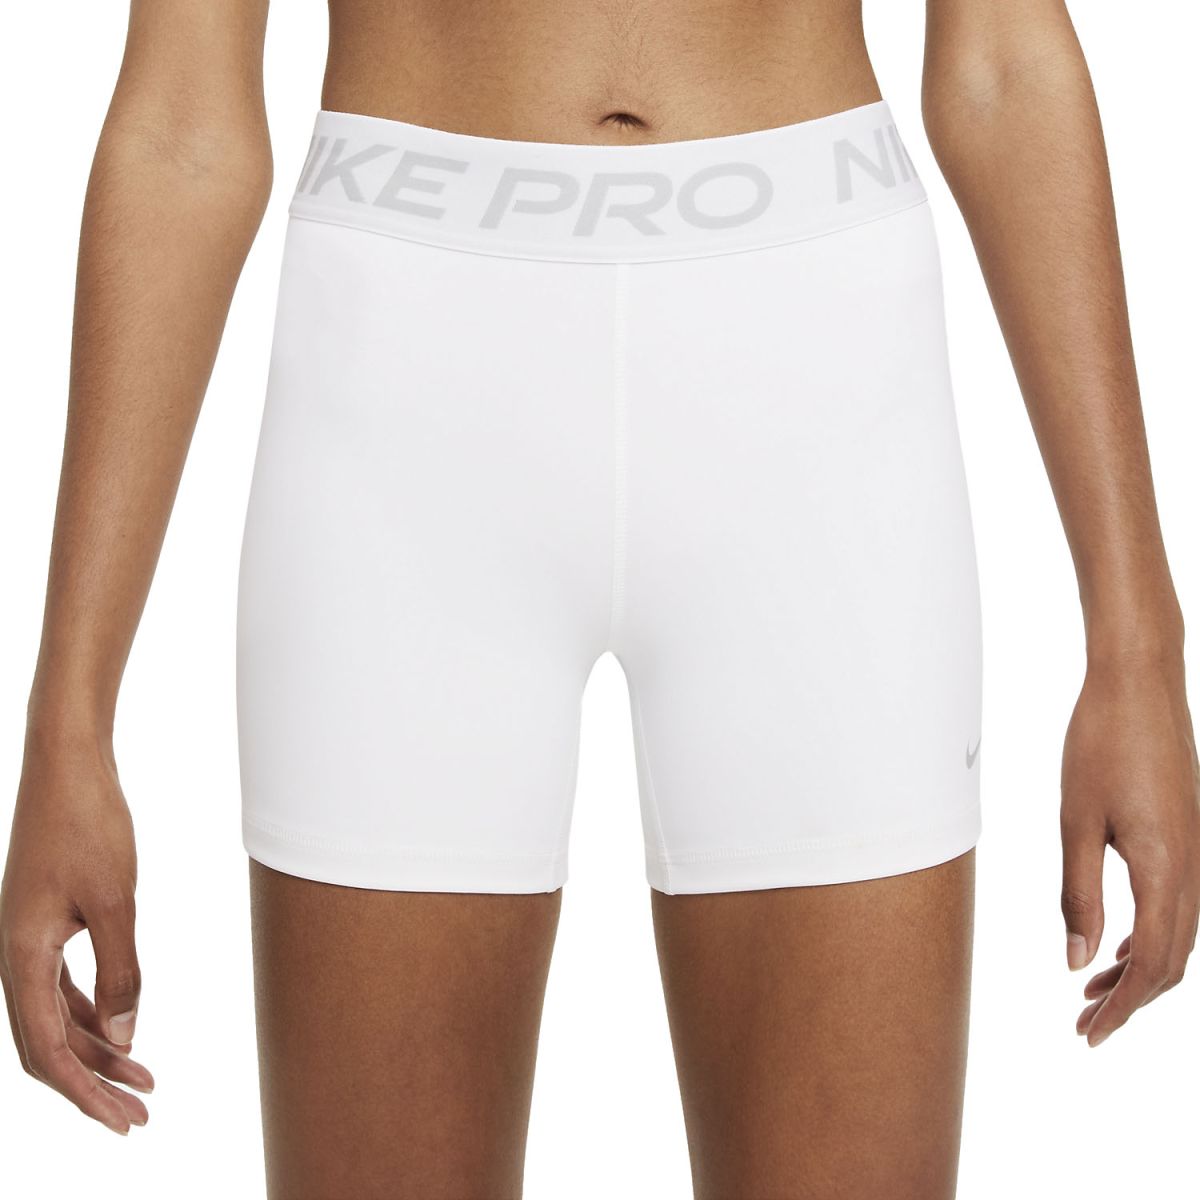 Nike Pro 365 Shorts